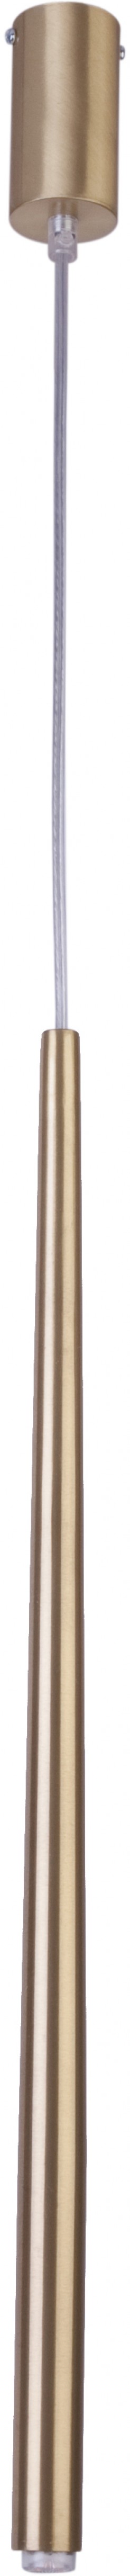 Lampa wisząca Sigma złoty stożek 33156